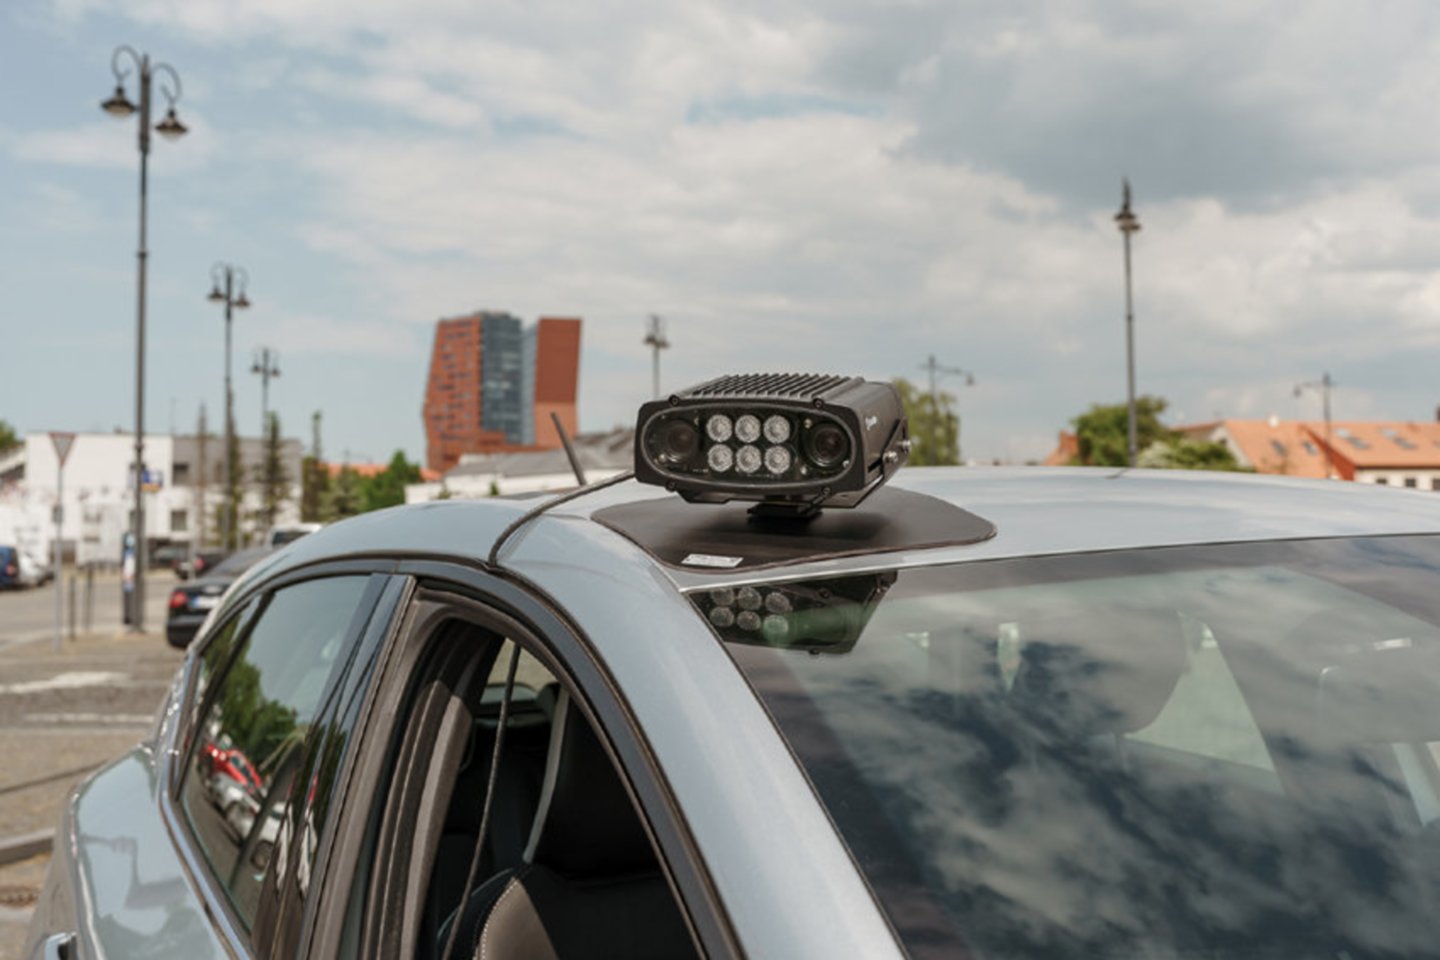 Gegužės 24 dieną įstaigos specialistai tikrino automatinės parkavimo kontrolės įrangos veikimą.<br>VšĮ „Klaipėdos keleivinis transportas“ nuotr.